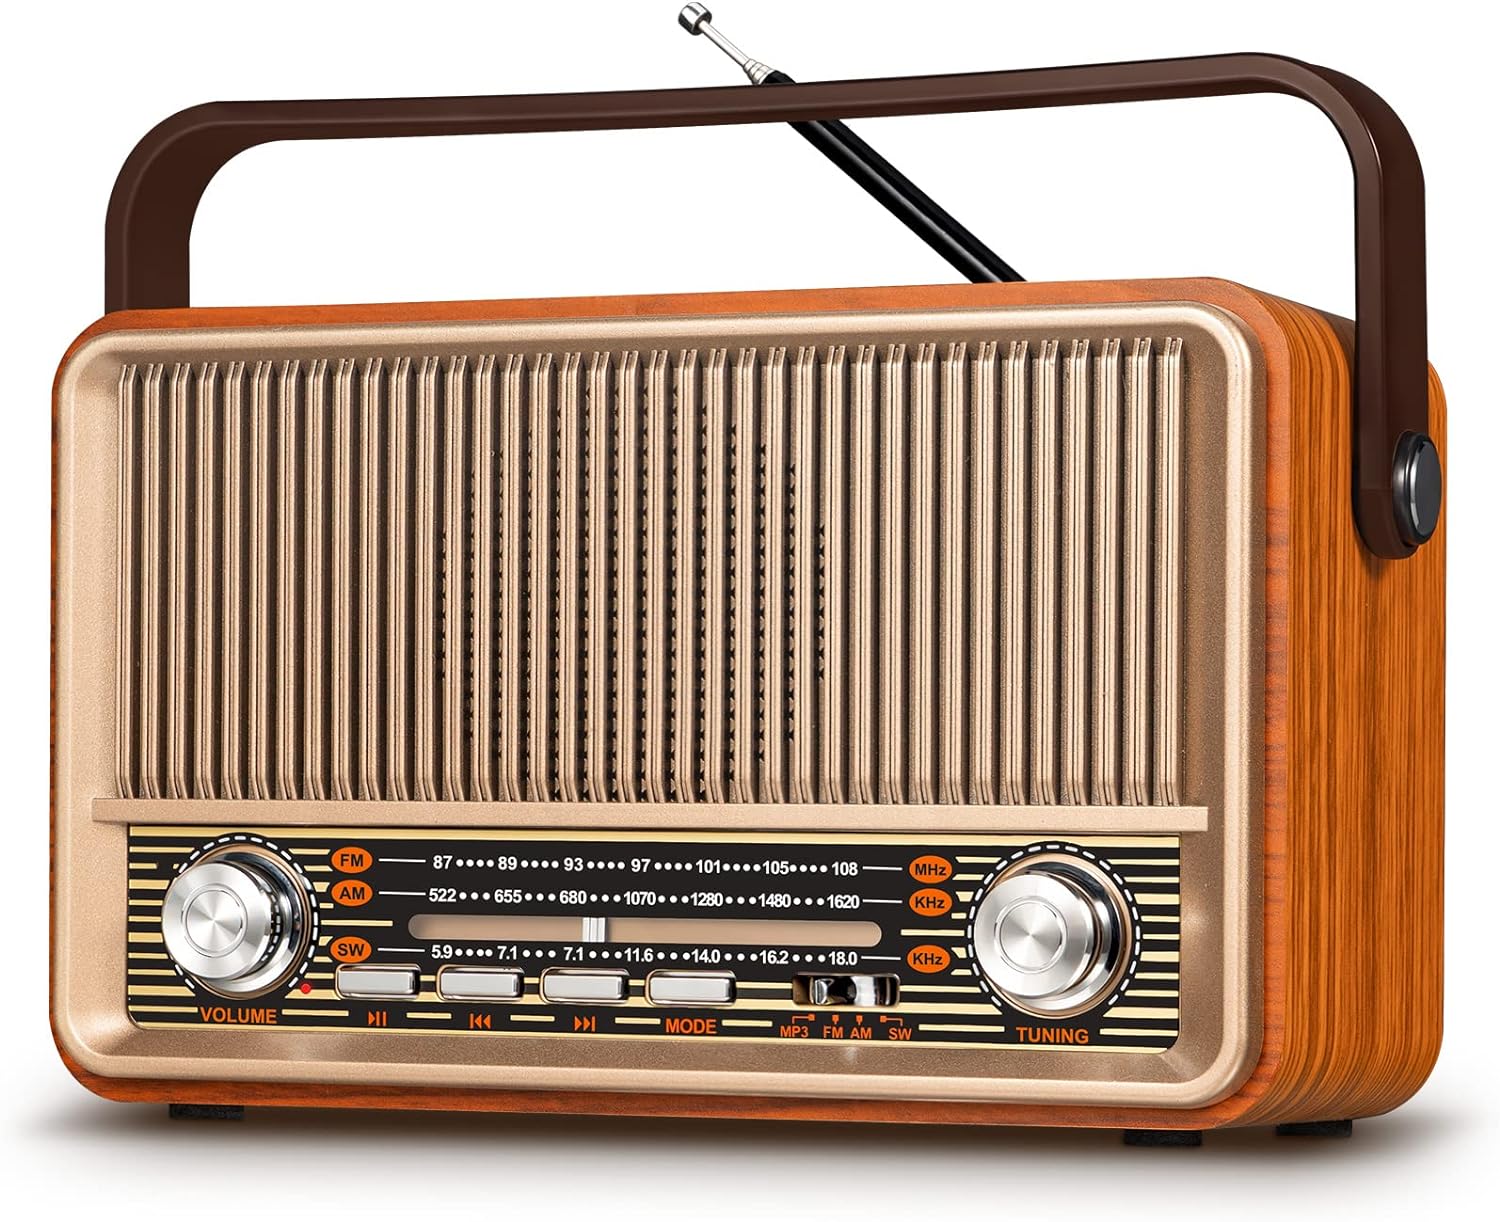 Radio vintage con porta-celular –